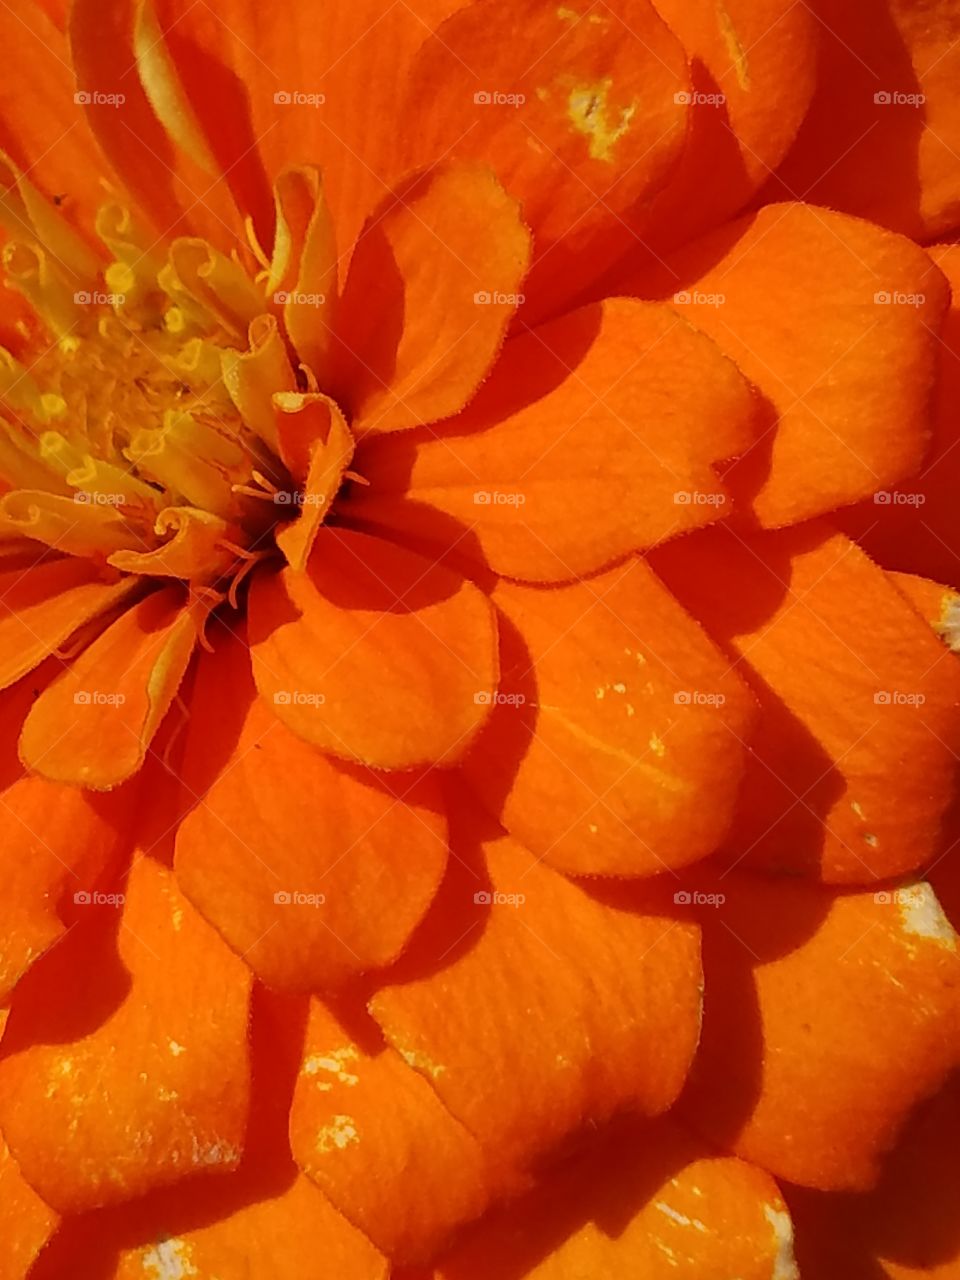 Orange petals